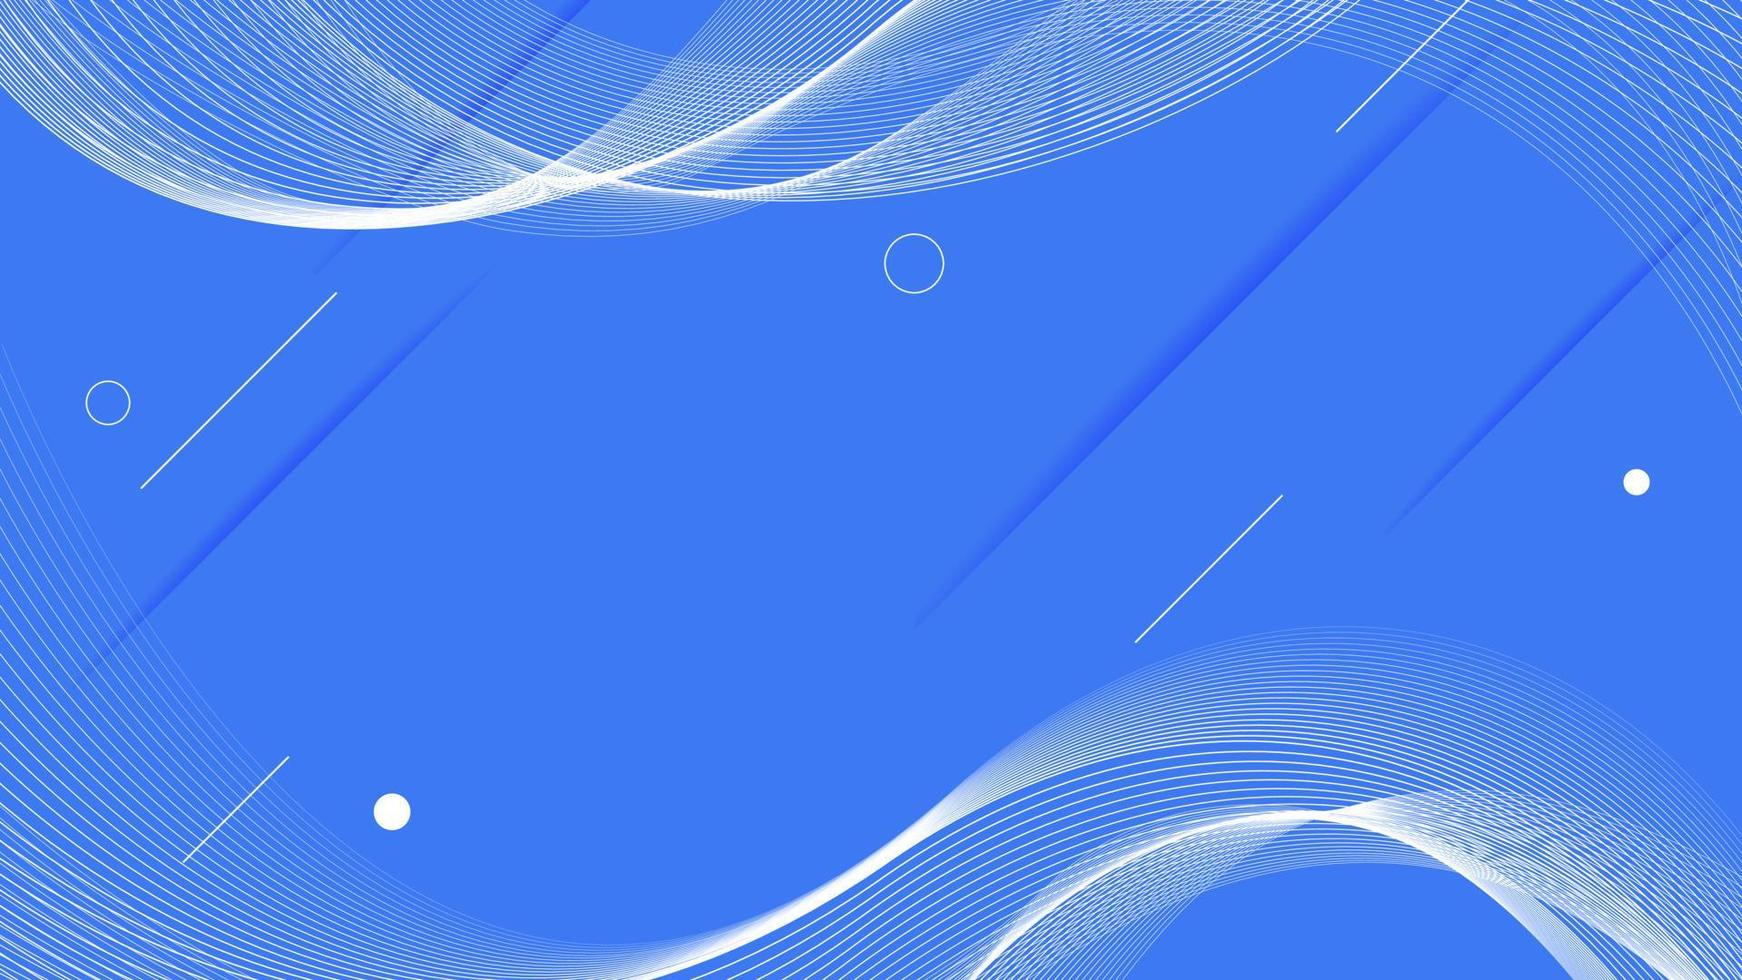 fond bleu abstrait moderne avec des lignes ondulées légères. conception de fond de forme géométrique de lignes fluides. illustration vectorielle vecteur